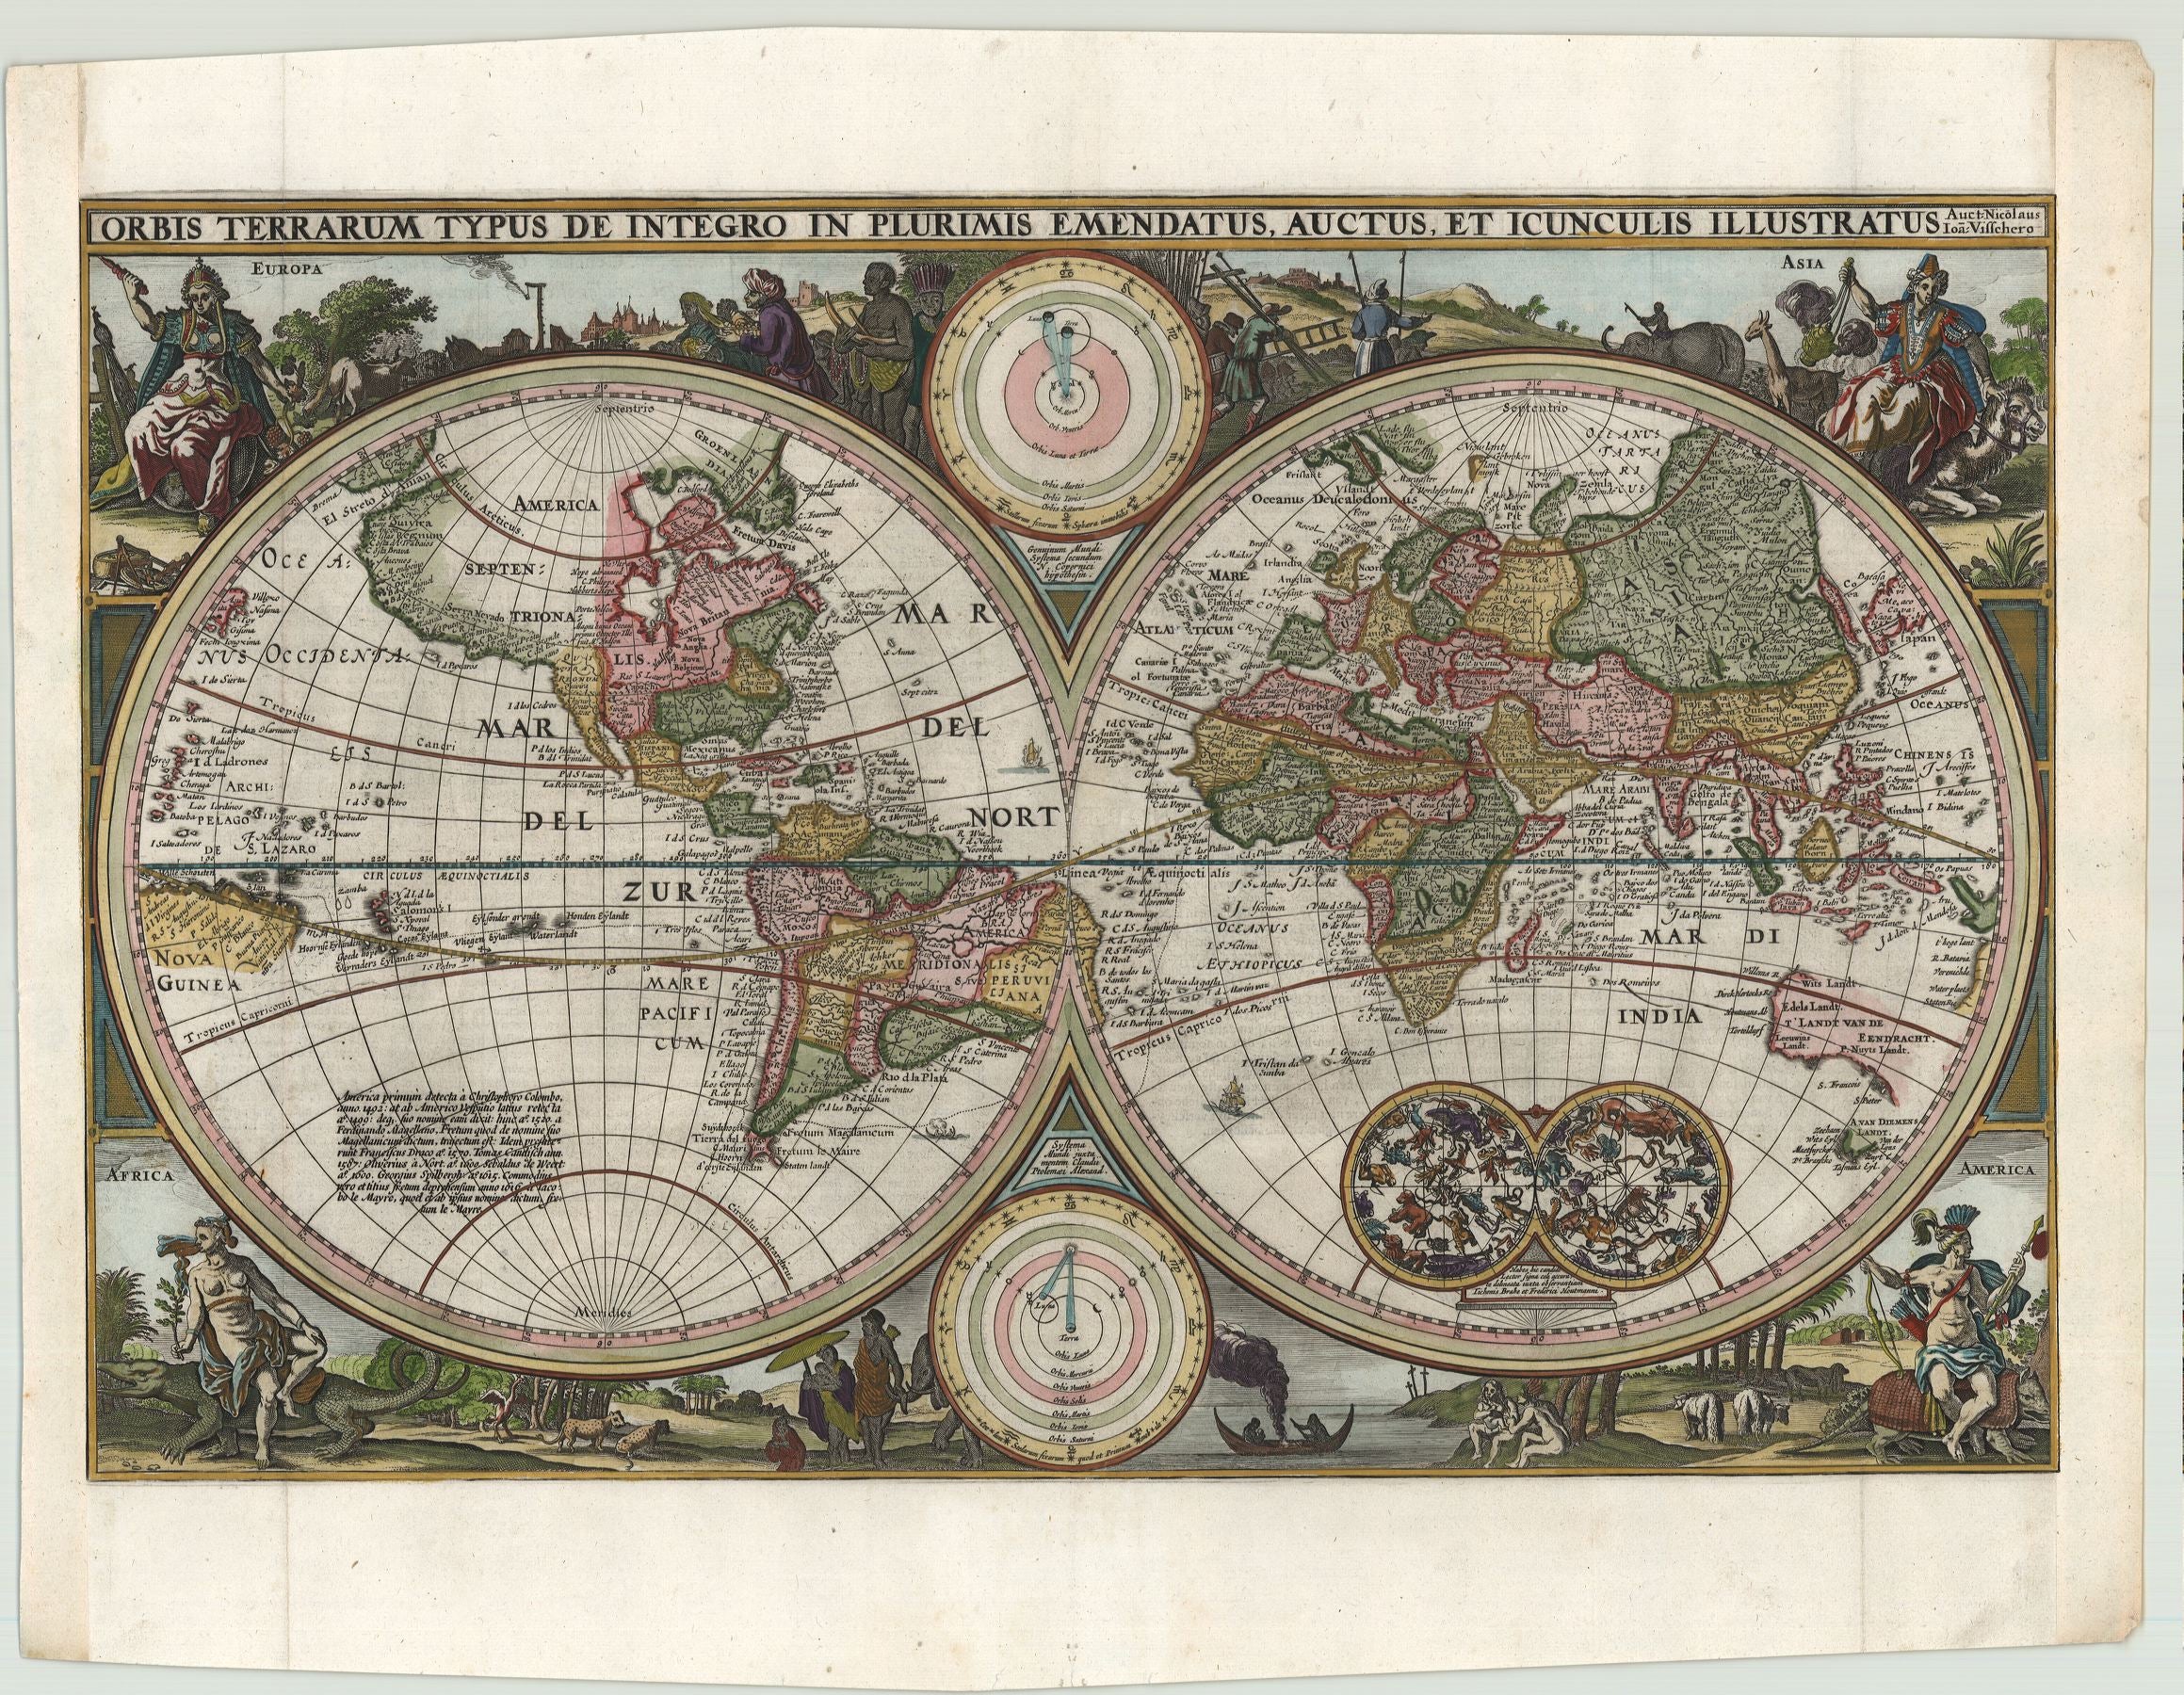 Visscher, Nicolaus: Orbis Terrarum Typus de Integro In Plurimis Emendatus, Auctus, et Icunculis Illustratus 1657